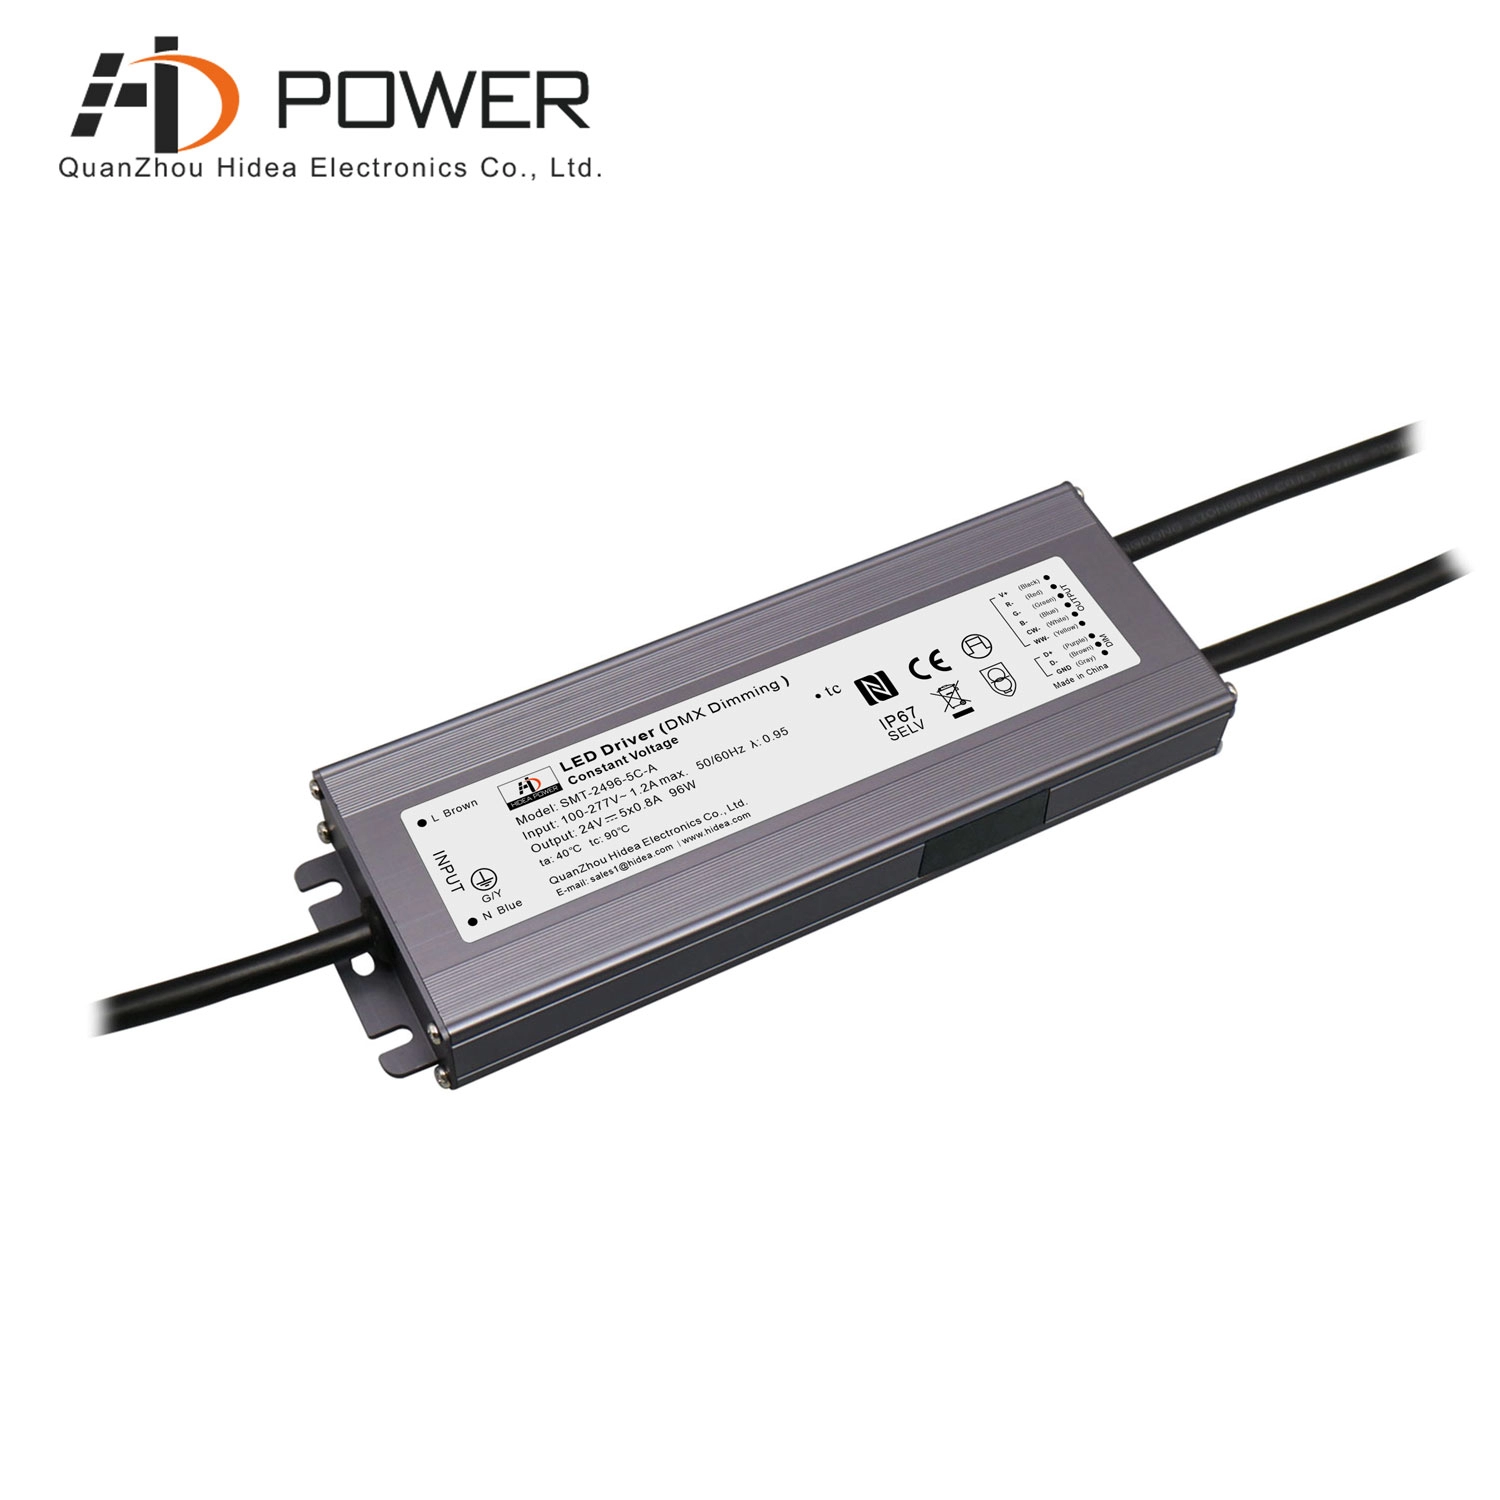 12-V-Transformator 24-V-LED-dimmbarer Treiber DMX-RGB-LED